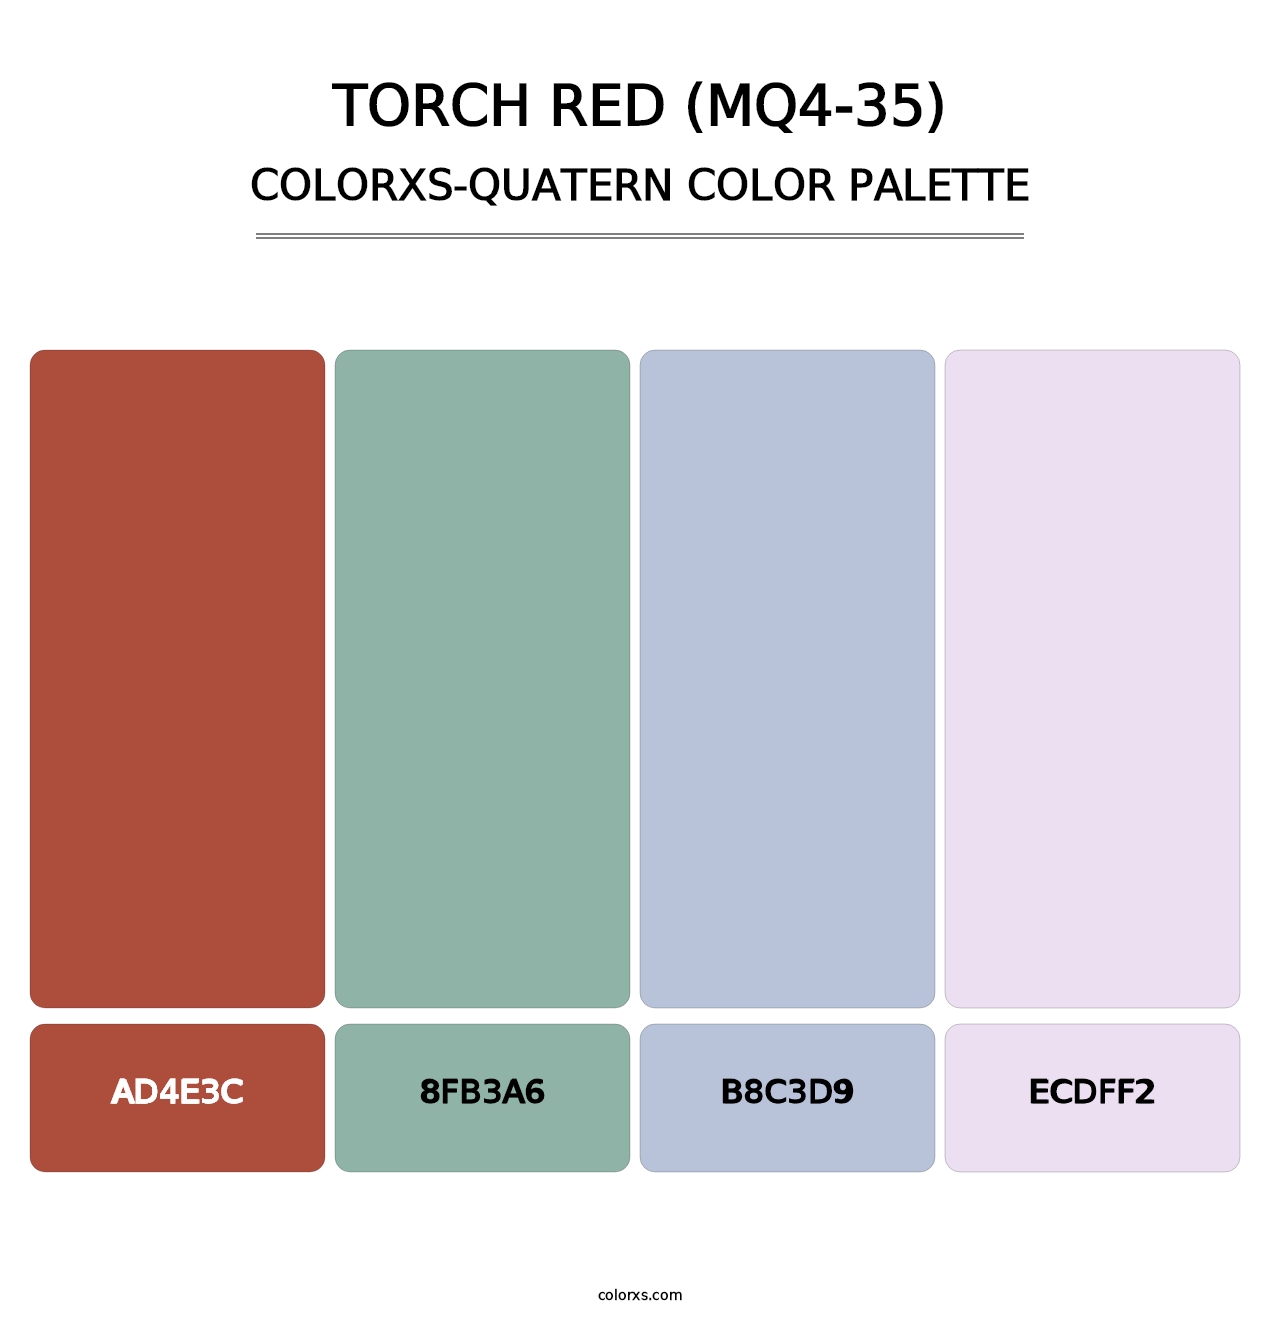 Torch Red (MQ4-35) - Colorxs Quatern Palette